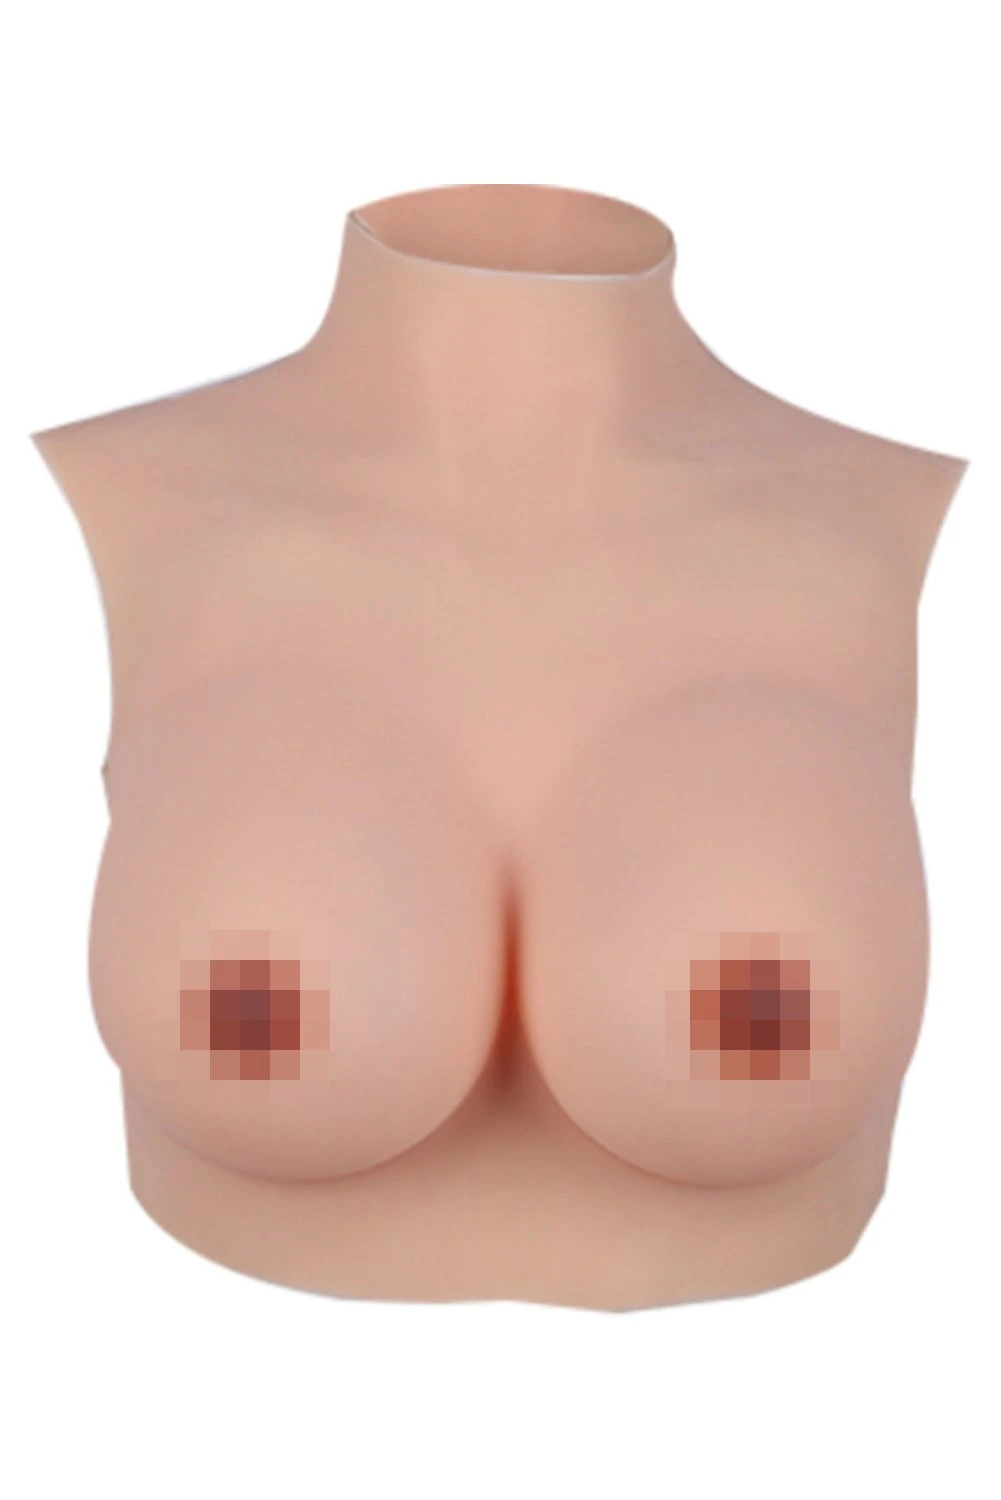 Half Body Silikon Fake Breasts Forms DWT Falsche Brüste Mastektomie Cosplay Transgender Schauspieler Brustprothese - cosplaycartde